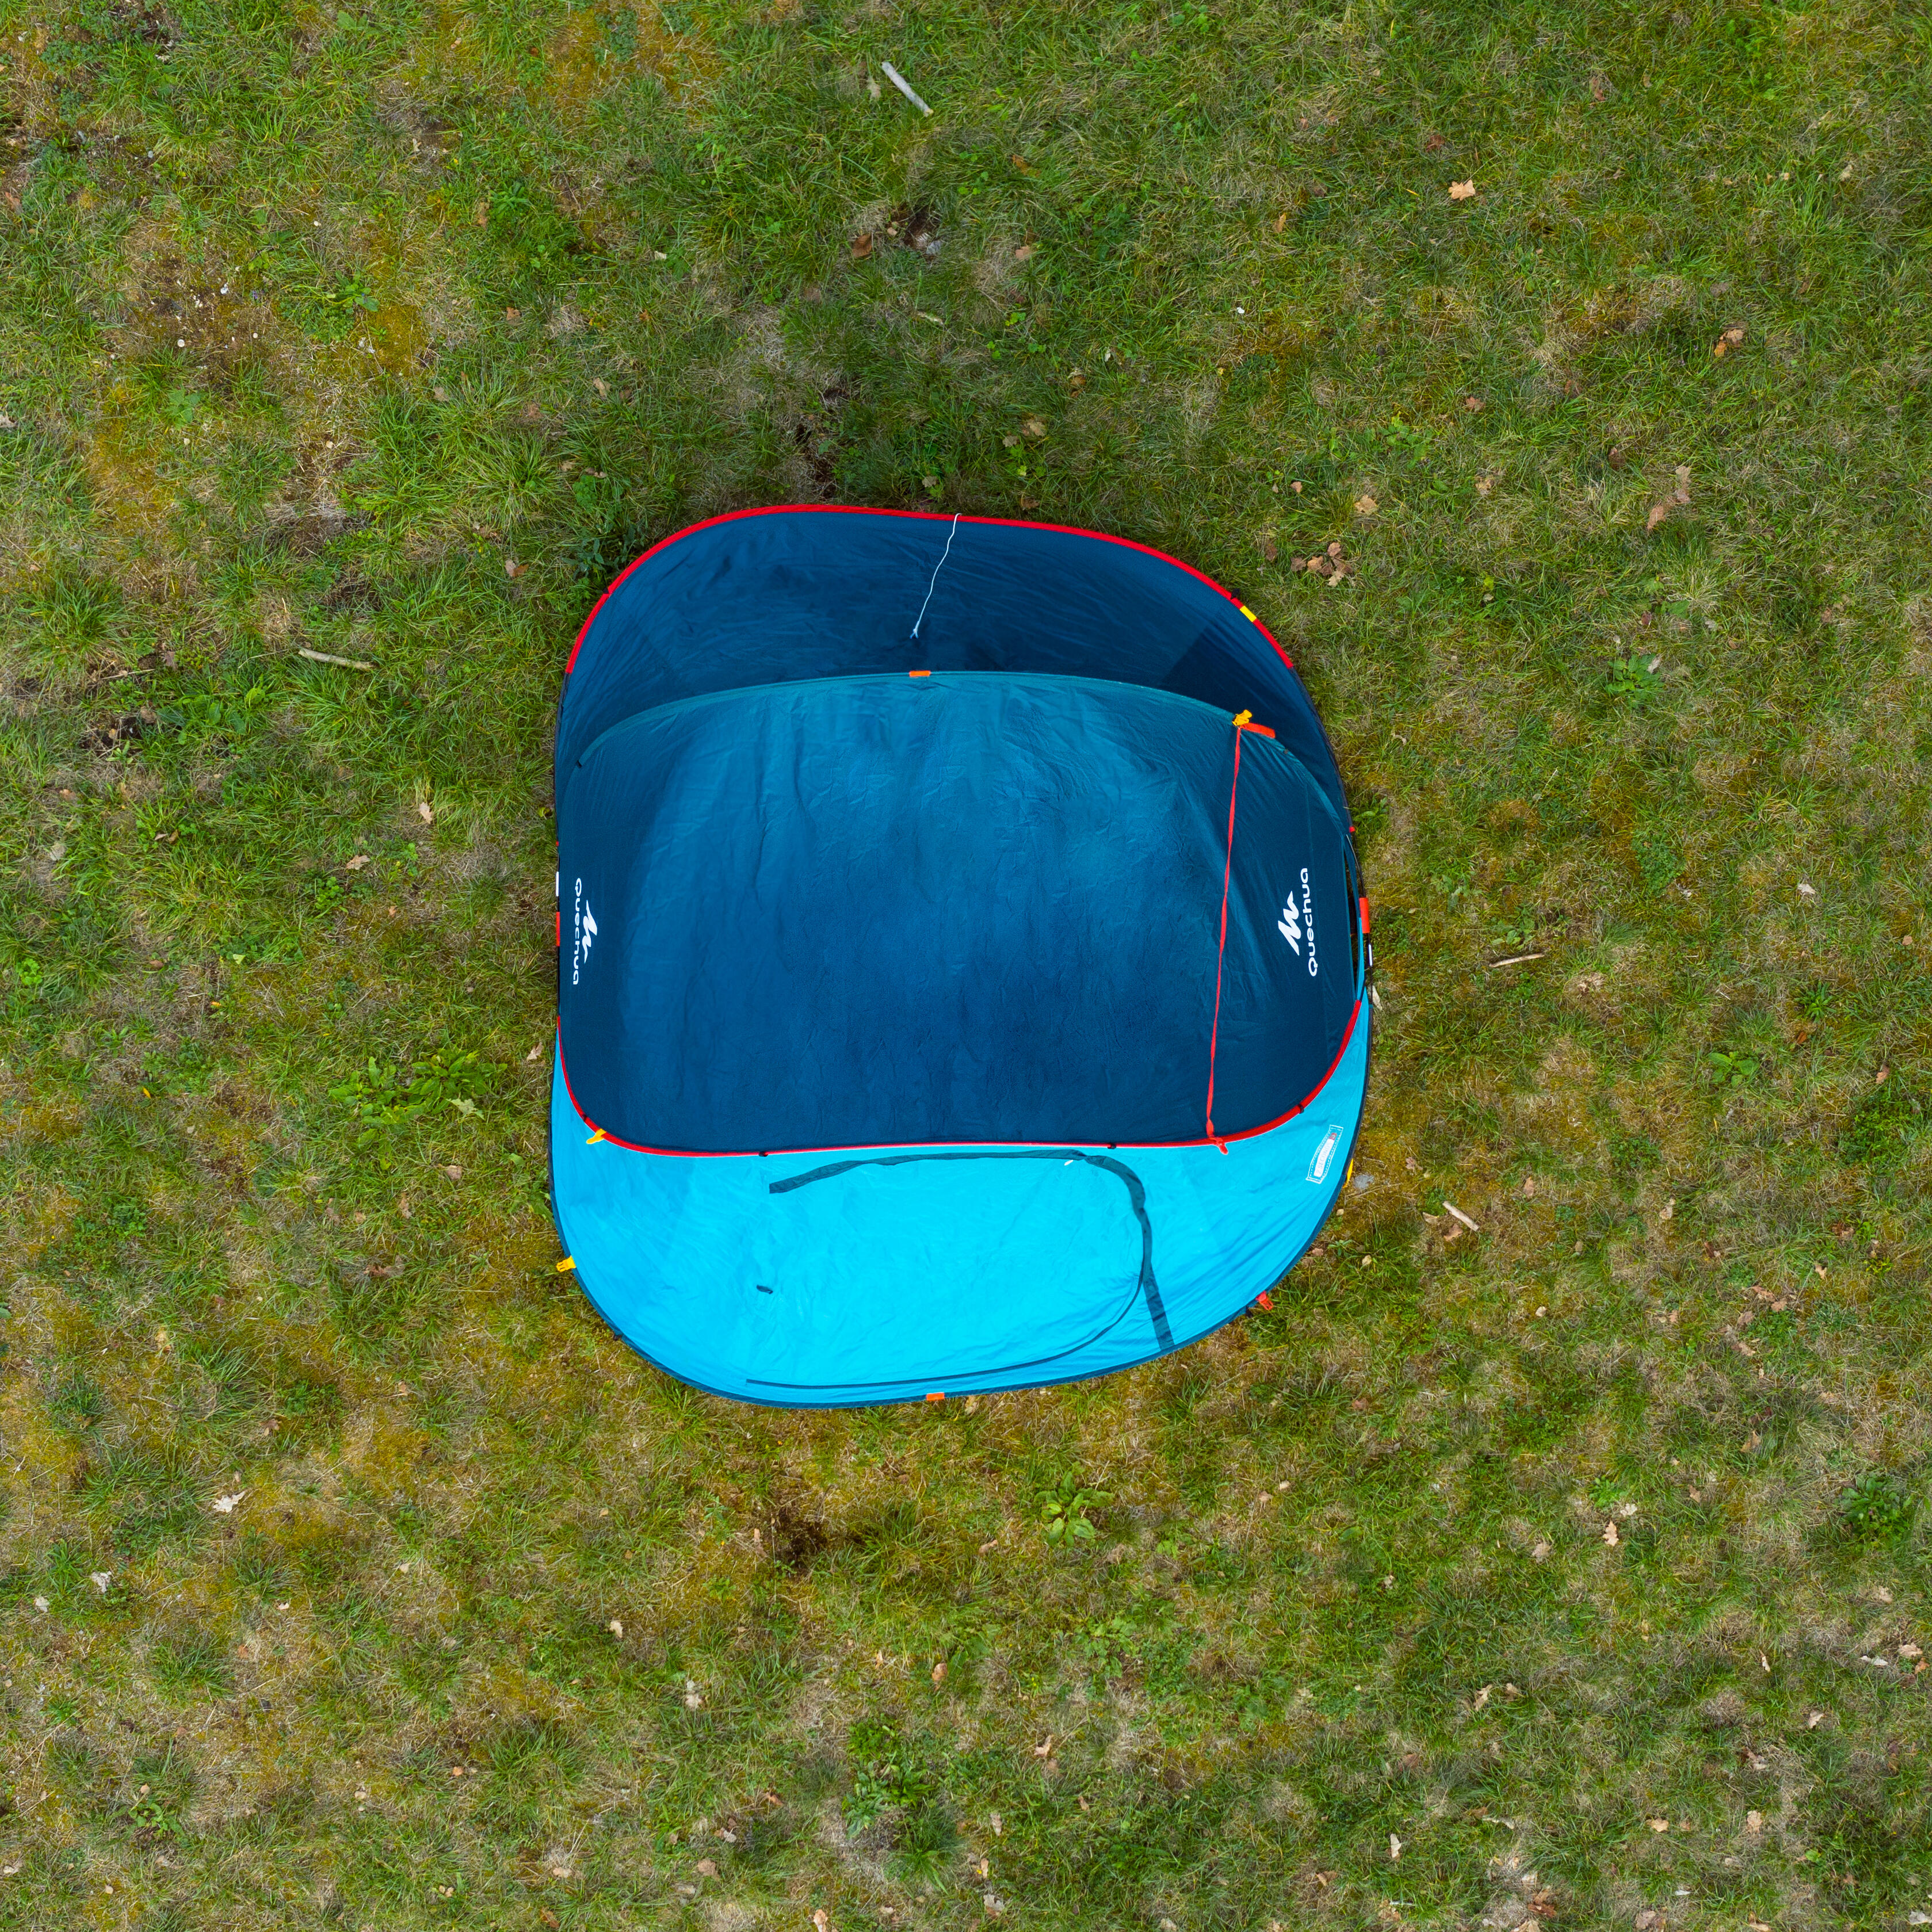 3-Person Camping Tent - 2 Seconds Grey - QUECHUA